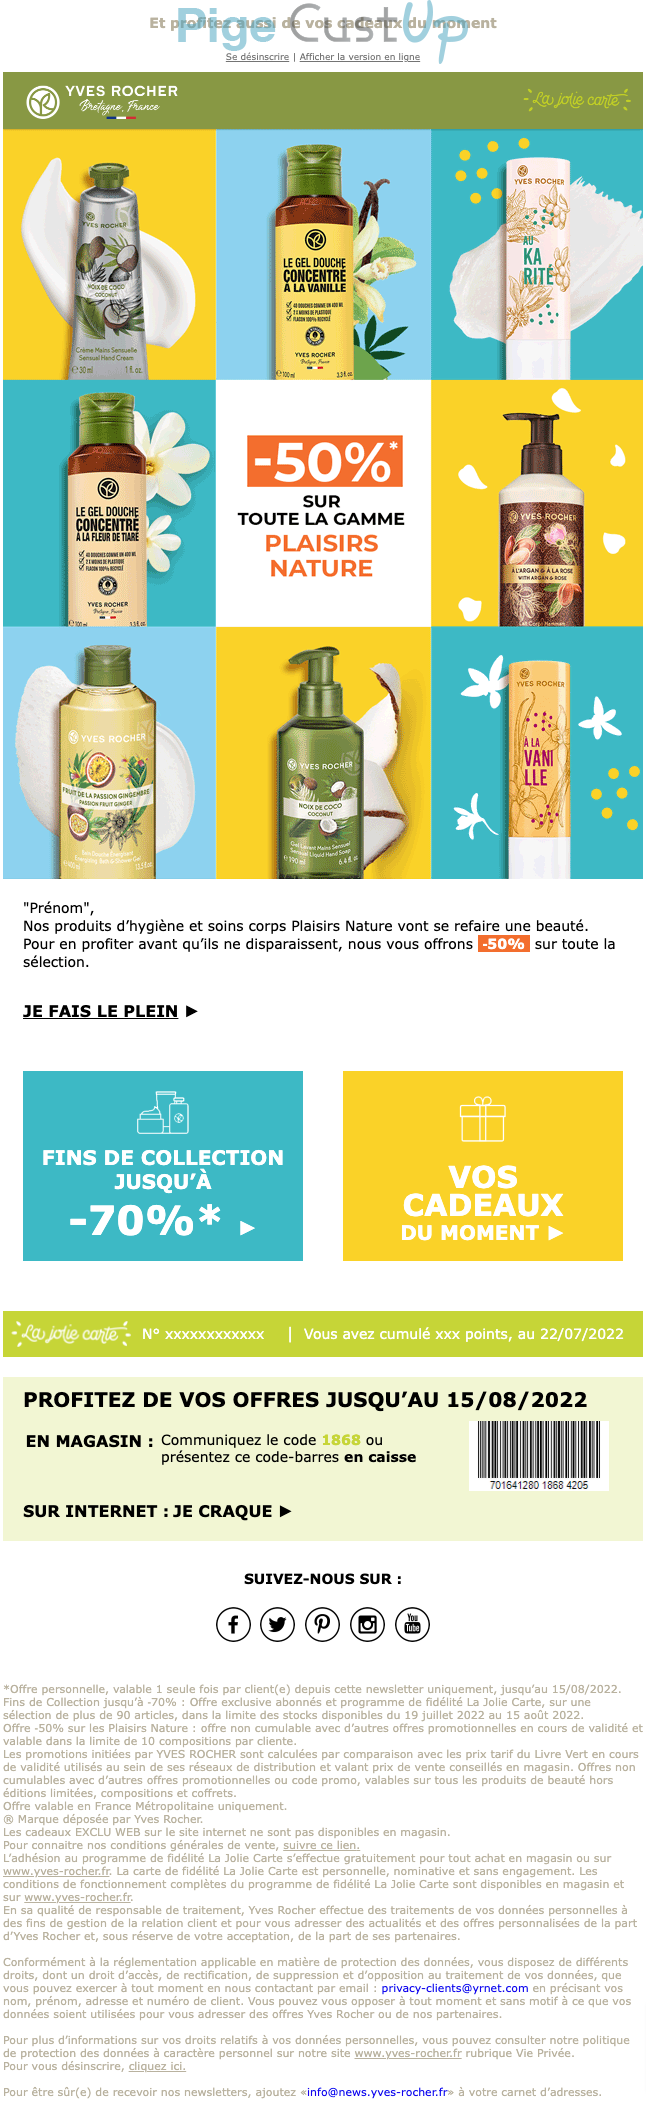 Exemple de Type de media  e-mailing - Yves Rocher - Marketing Acquisition - Ventes flash, soldes, demarque, promo, réduction